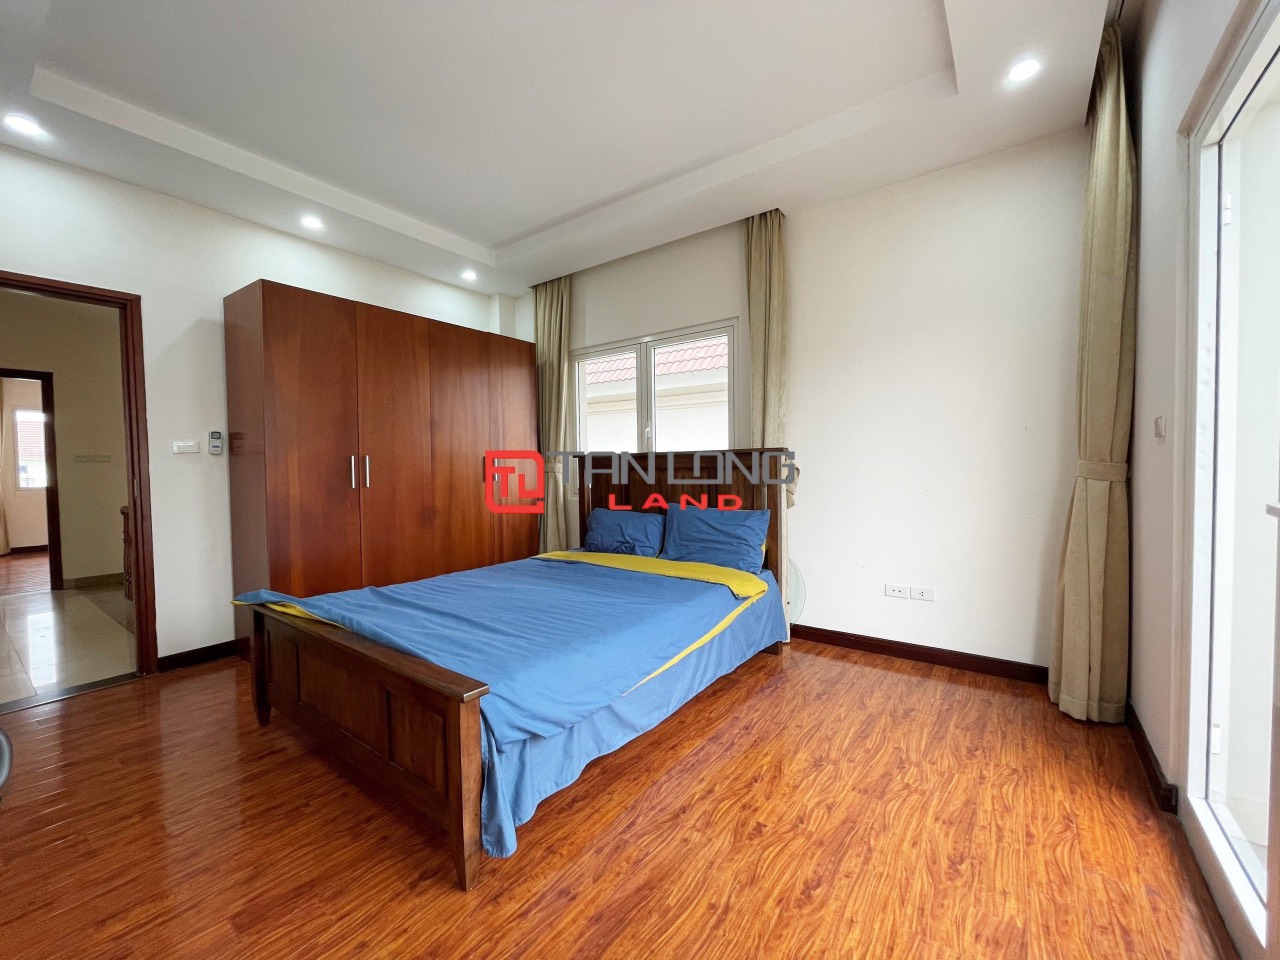 5 Bedrooms Duplex Villa for Rent with Reasonable Price in Vinhomes Riverside Long Bien 14